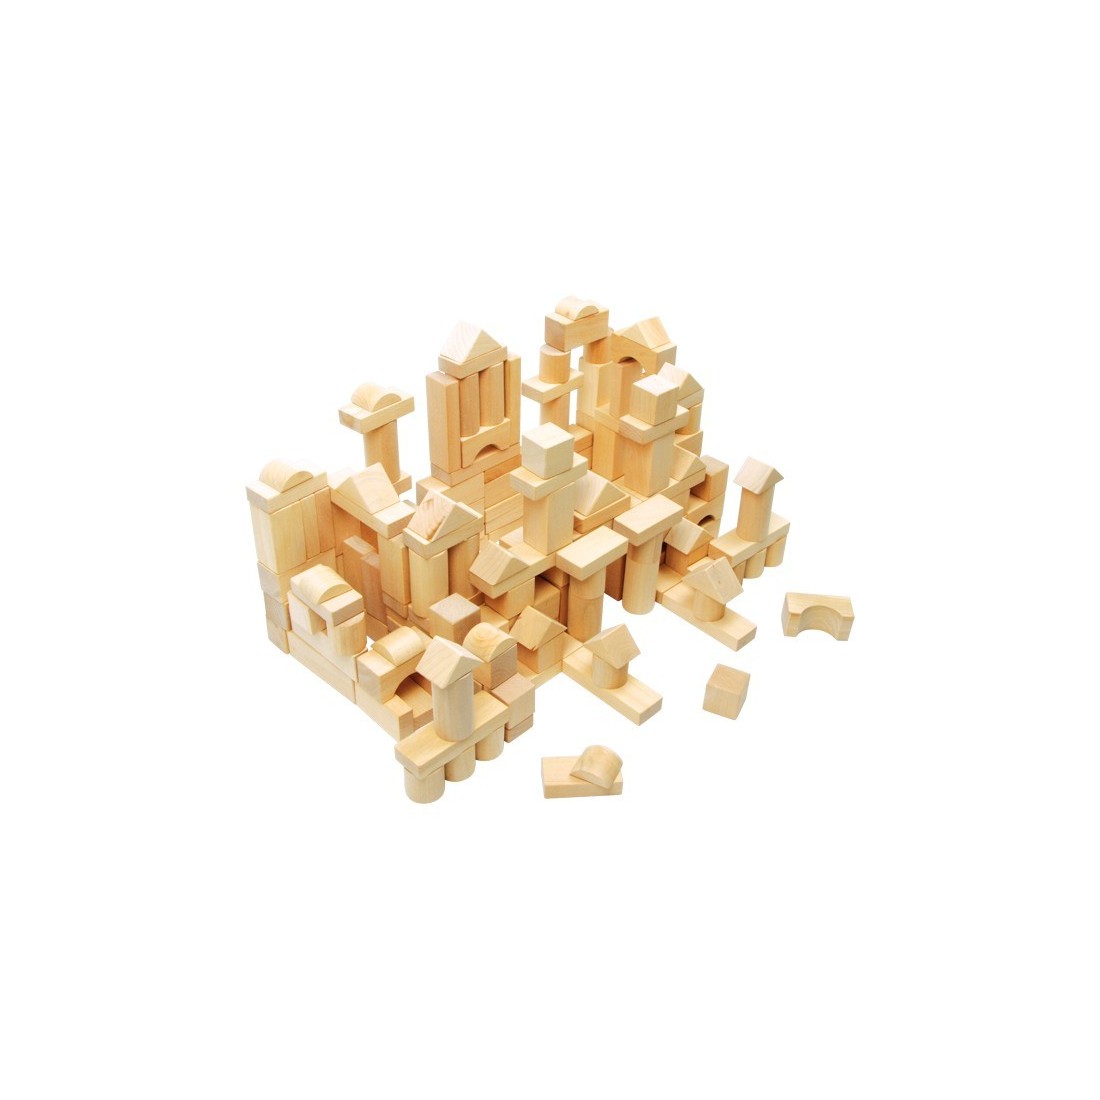 Cubetti in legno per le costruzioni - Small foot company 7073